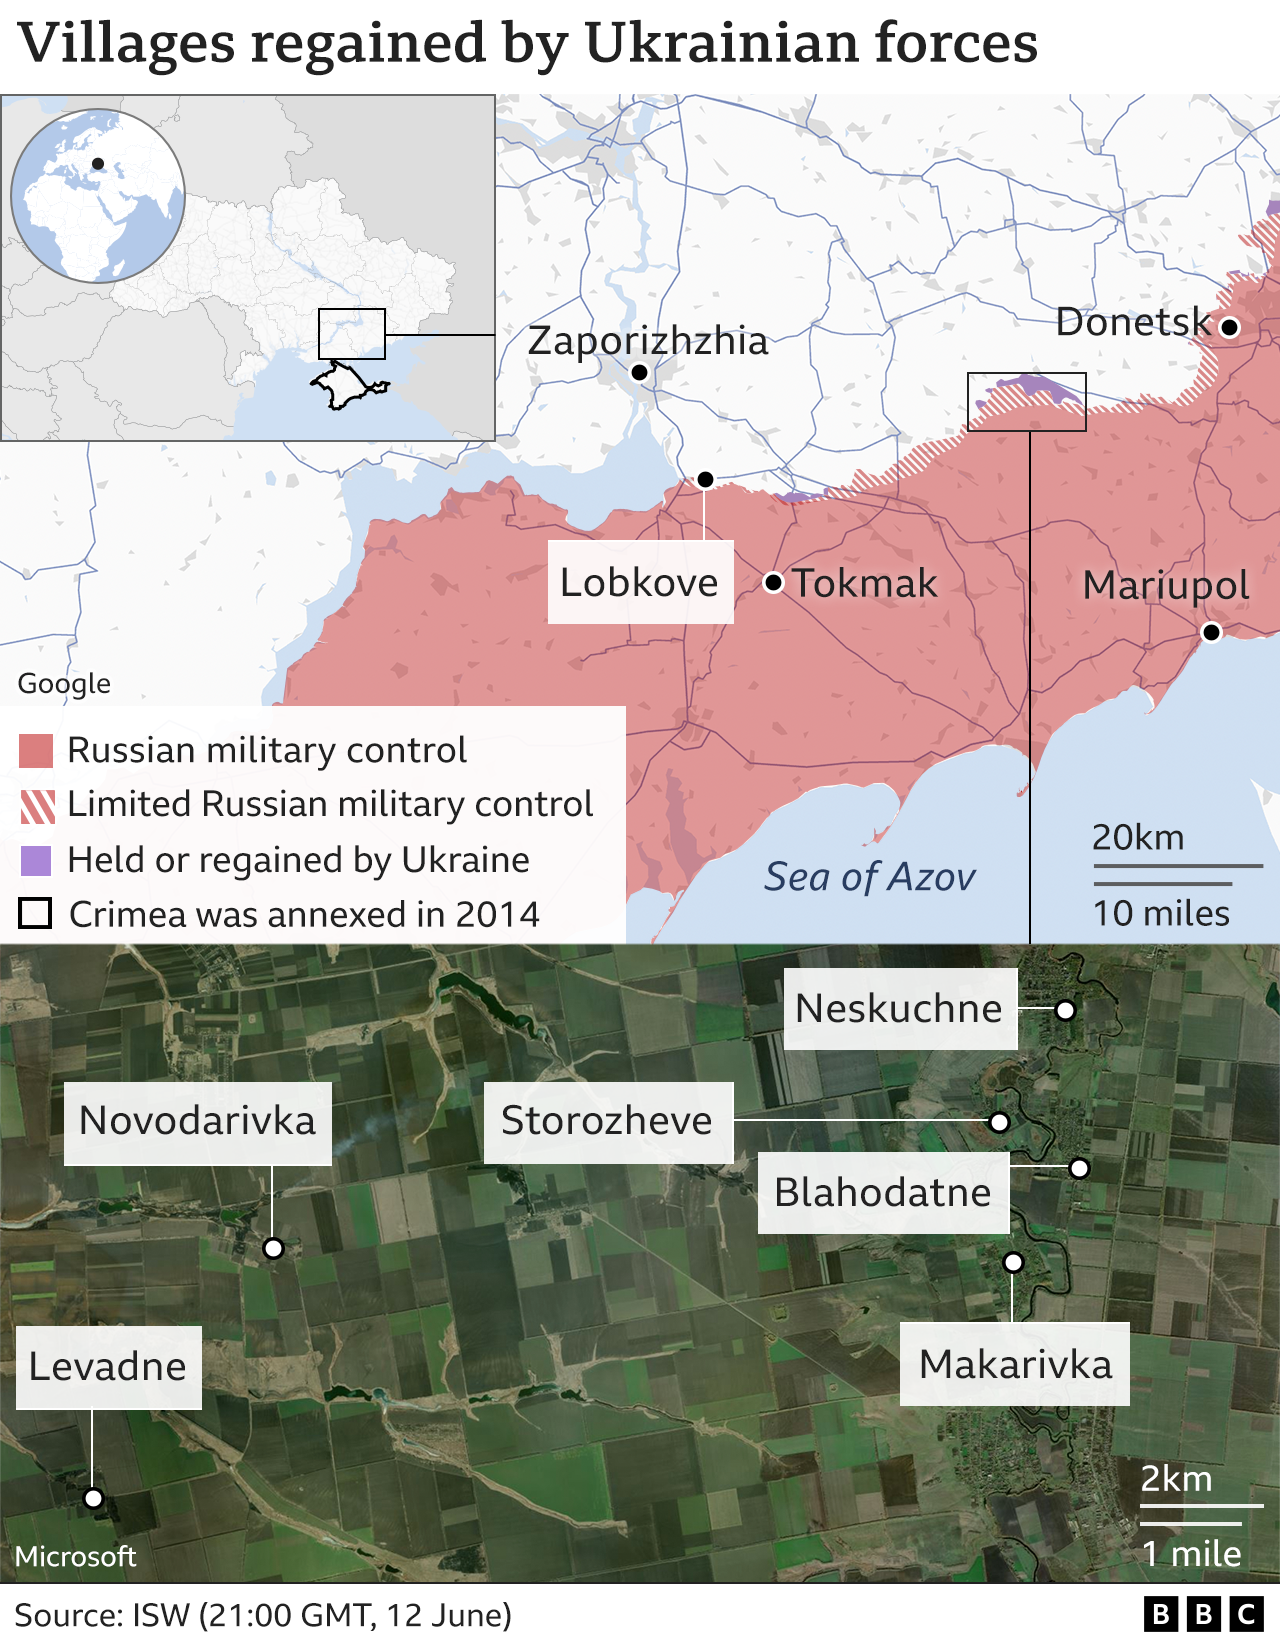 Карта с указанием местонахождения сел, отбитых украинскими войсками